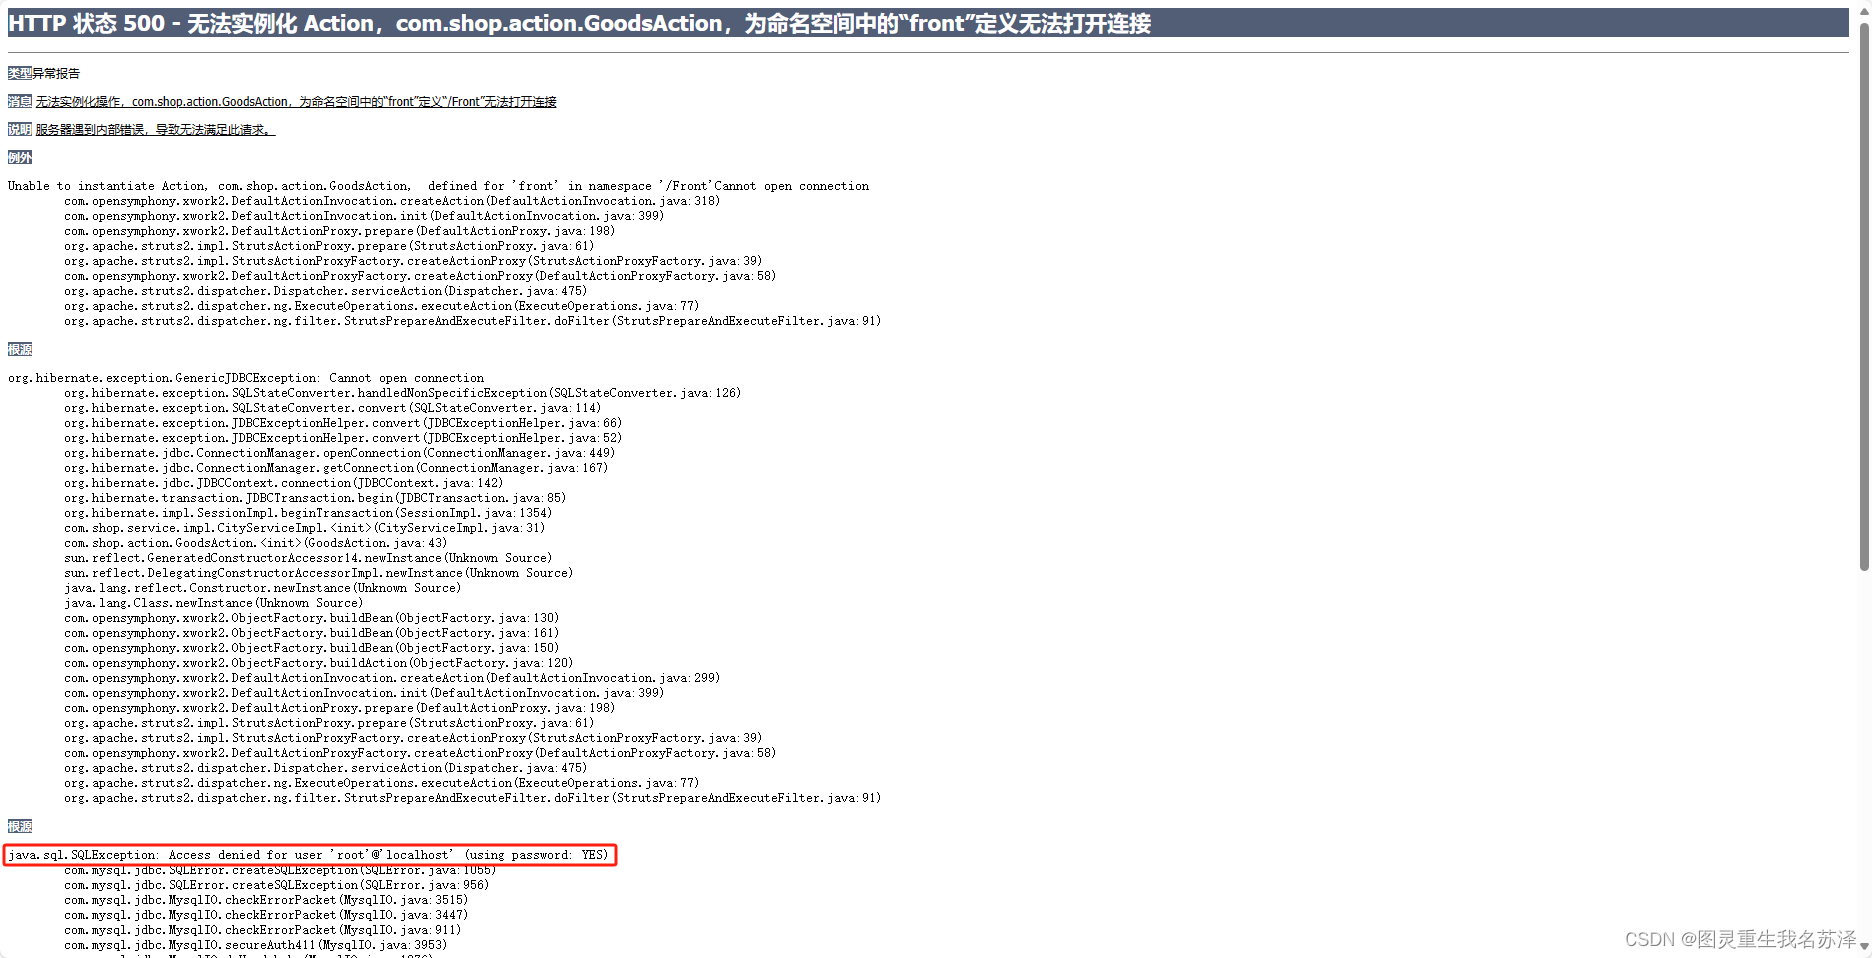 已解决：java.sql.SQLException: Access denied for user ‘root‘@‘localhost‘ (using password: YES)